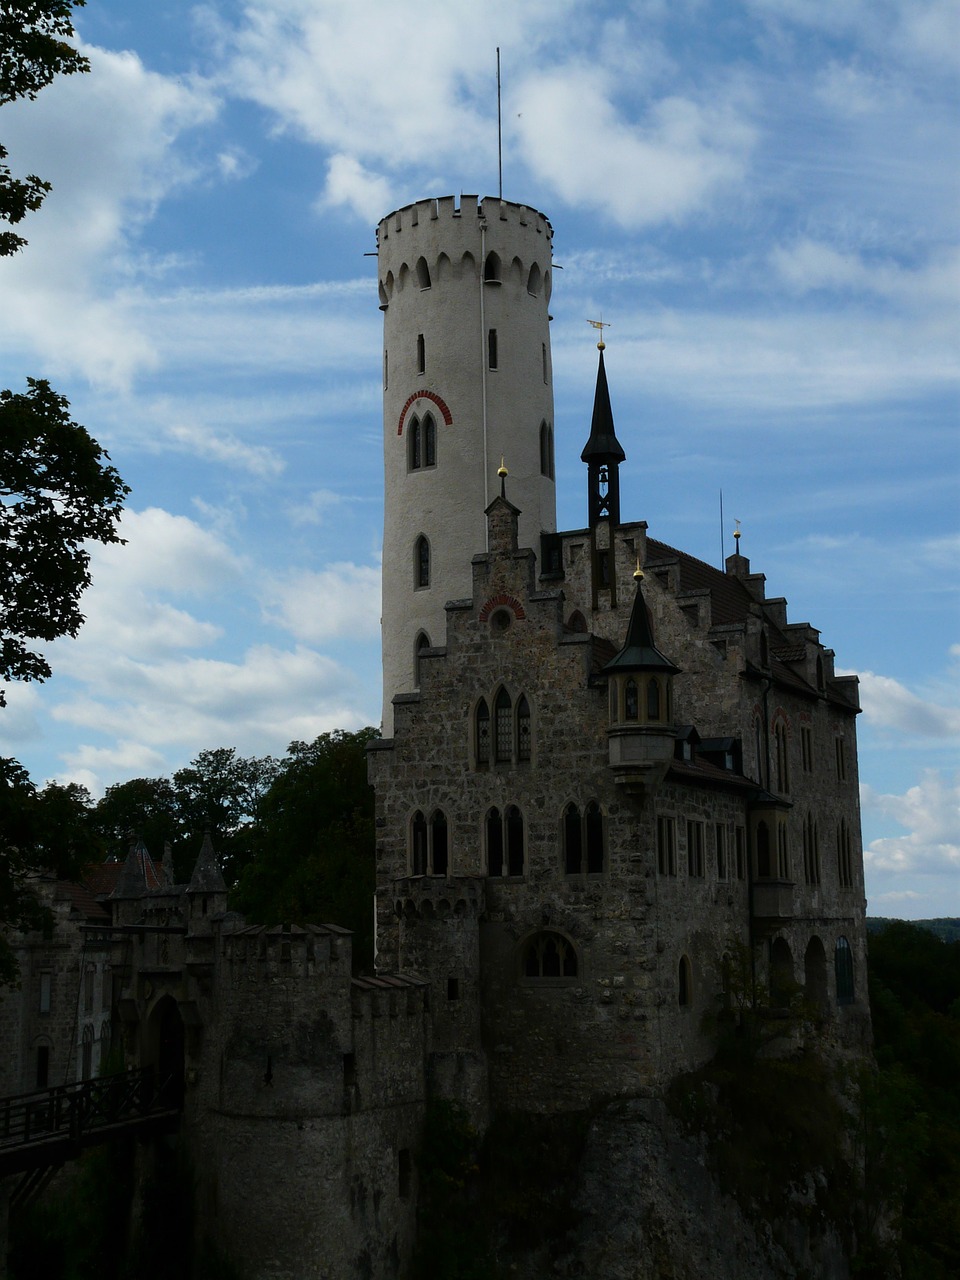 lichtenstein castle knight's castle free photo